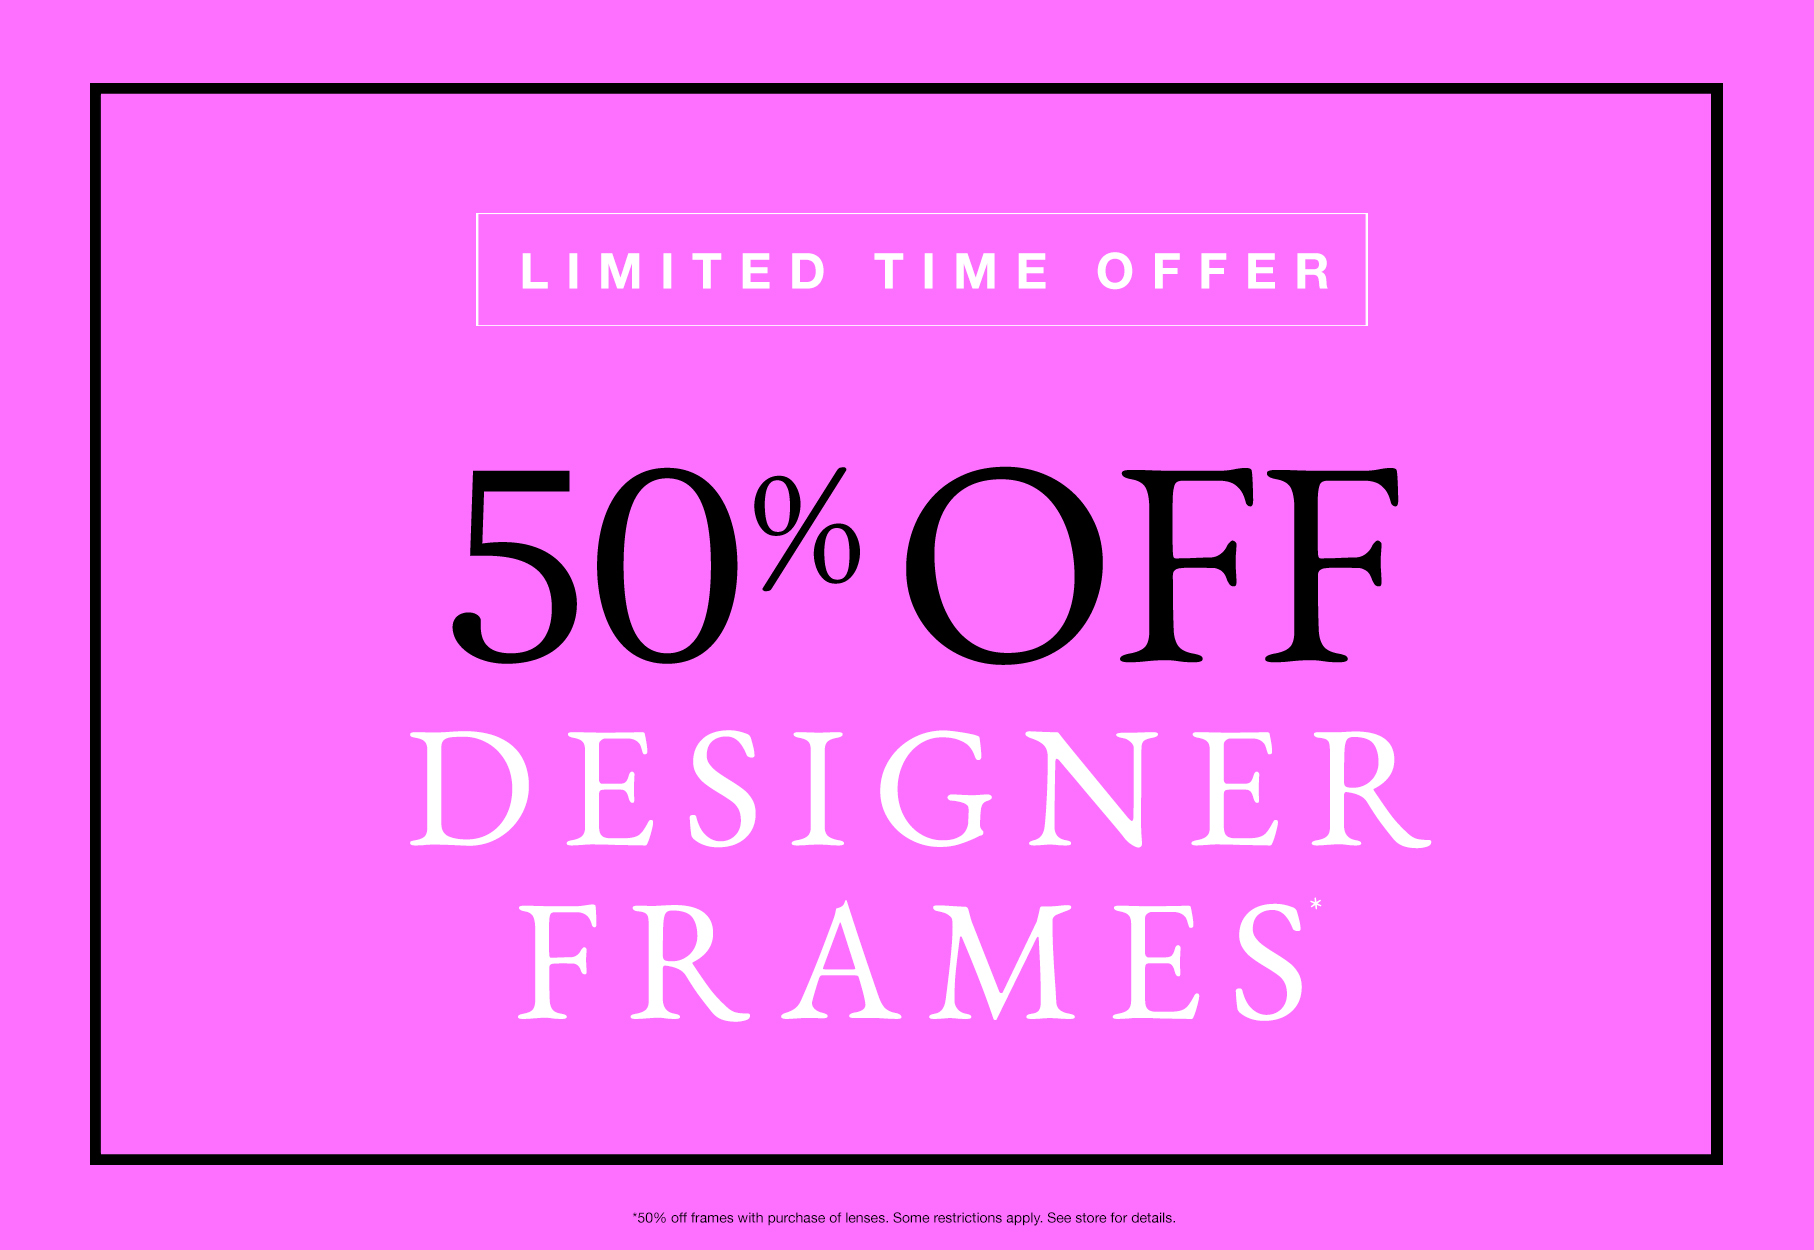 Limited time offer 50% off designer frames